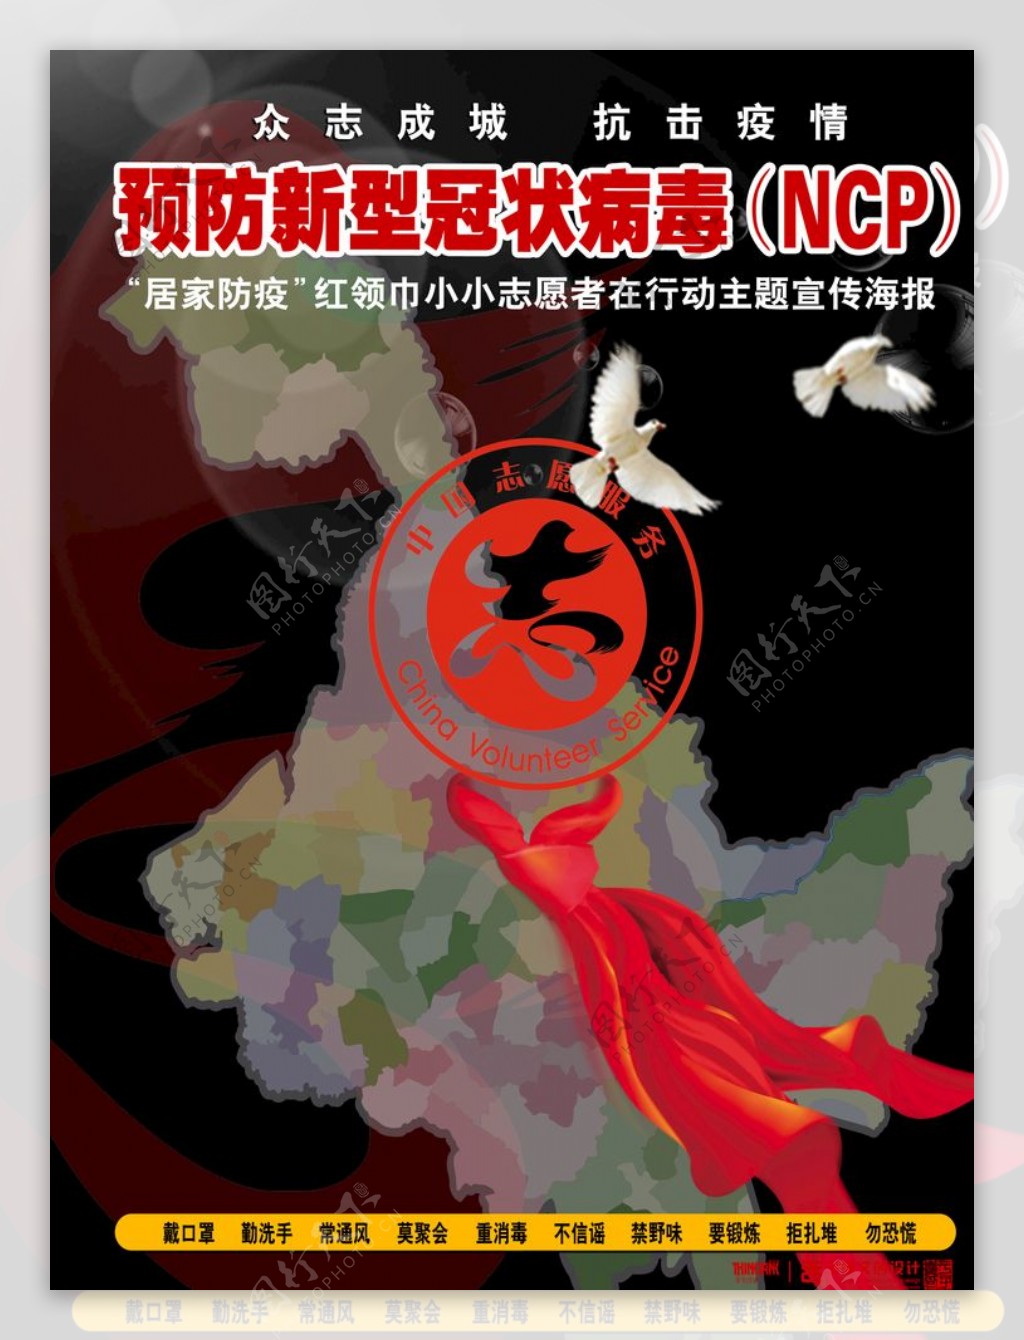 预防新型冠状病毒NCP海报